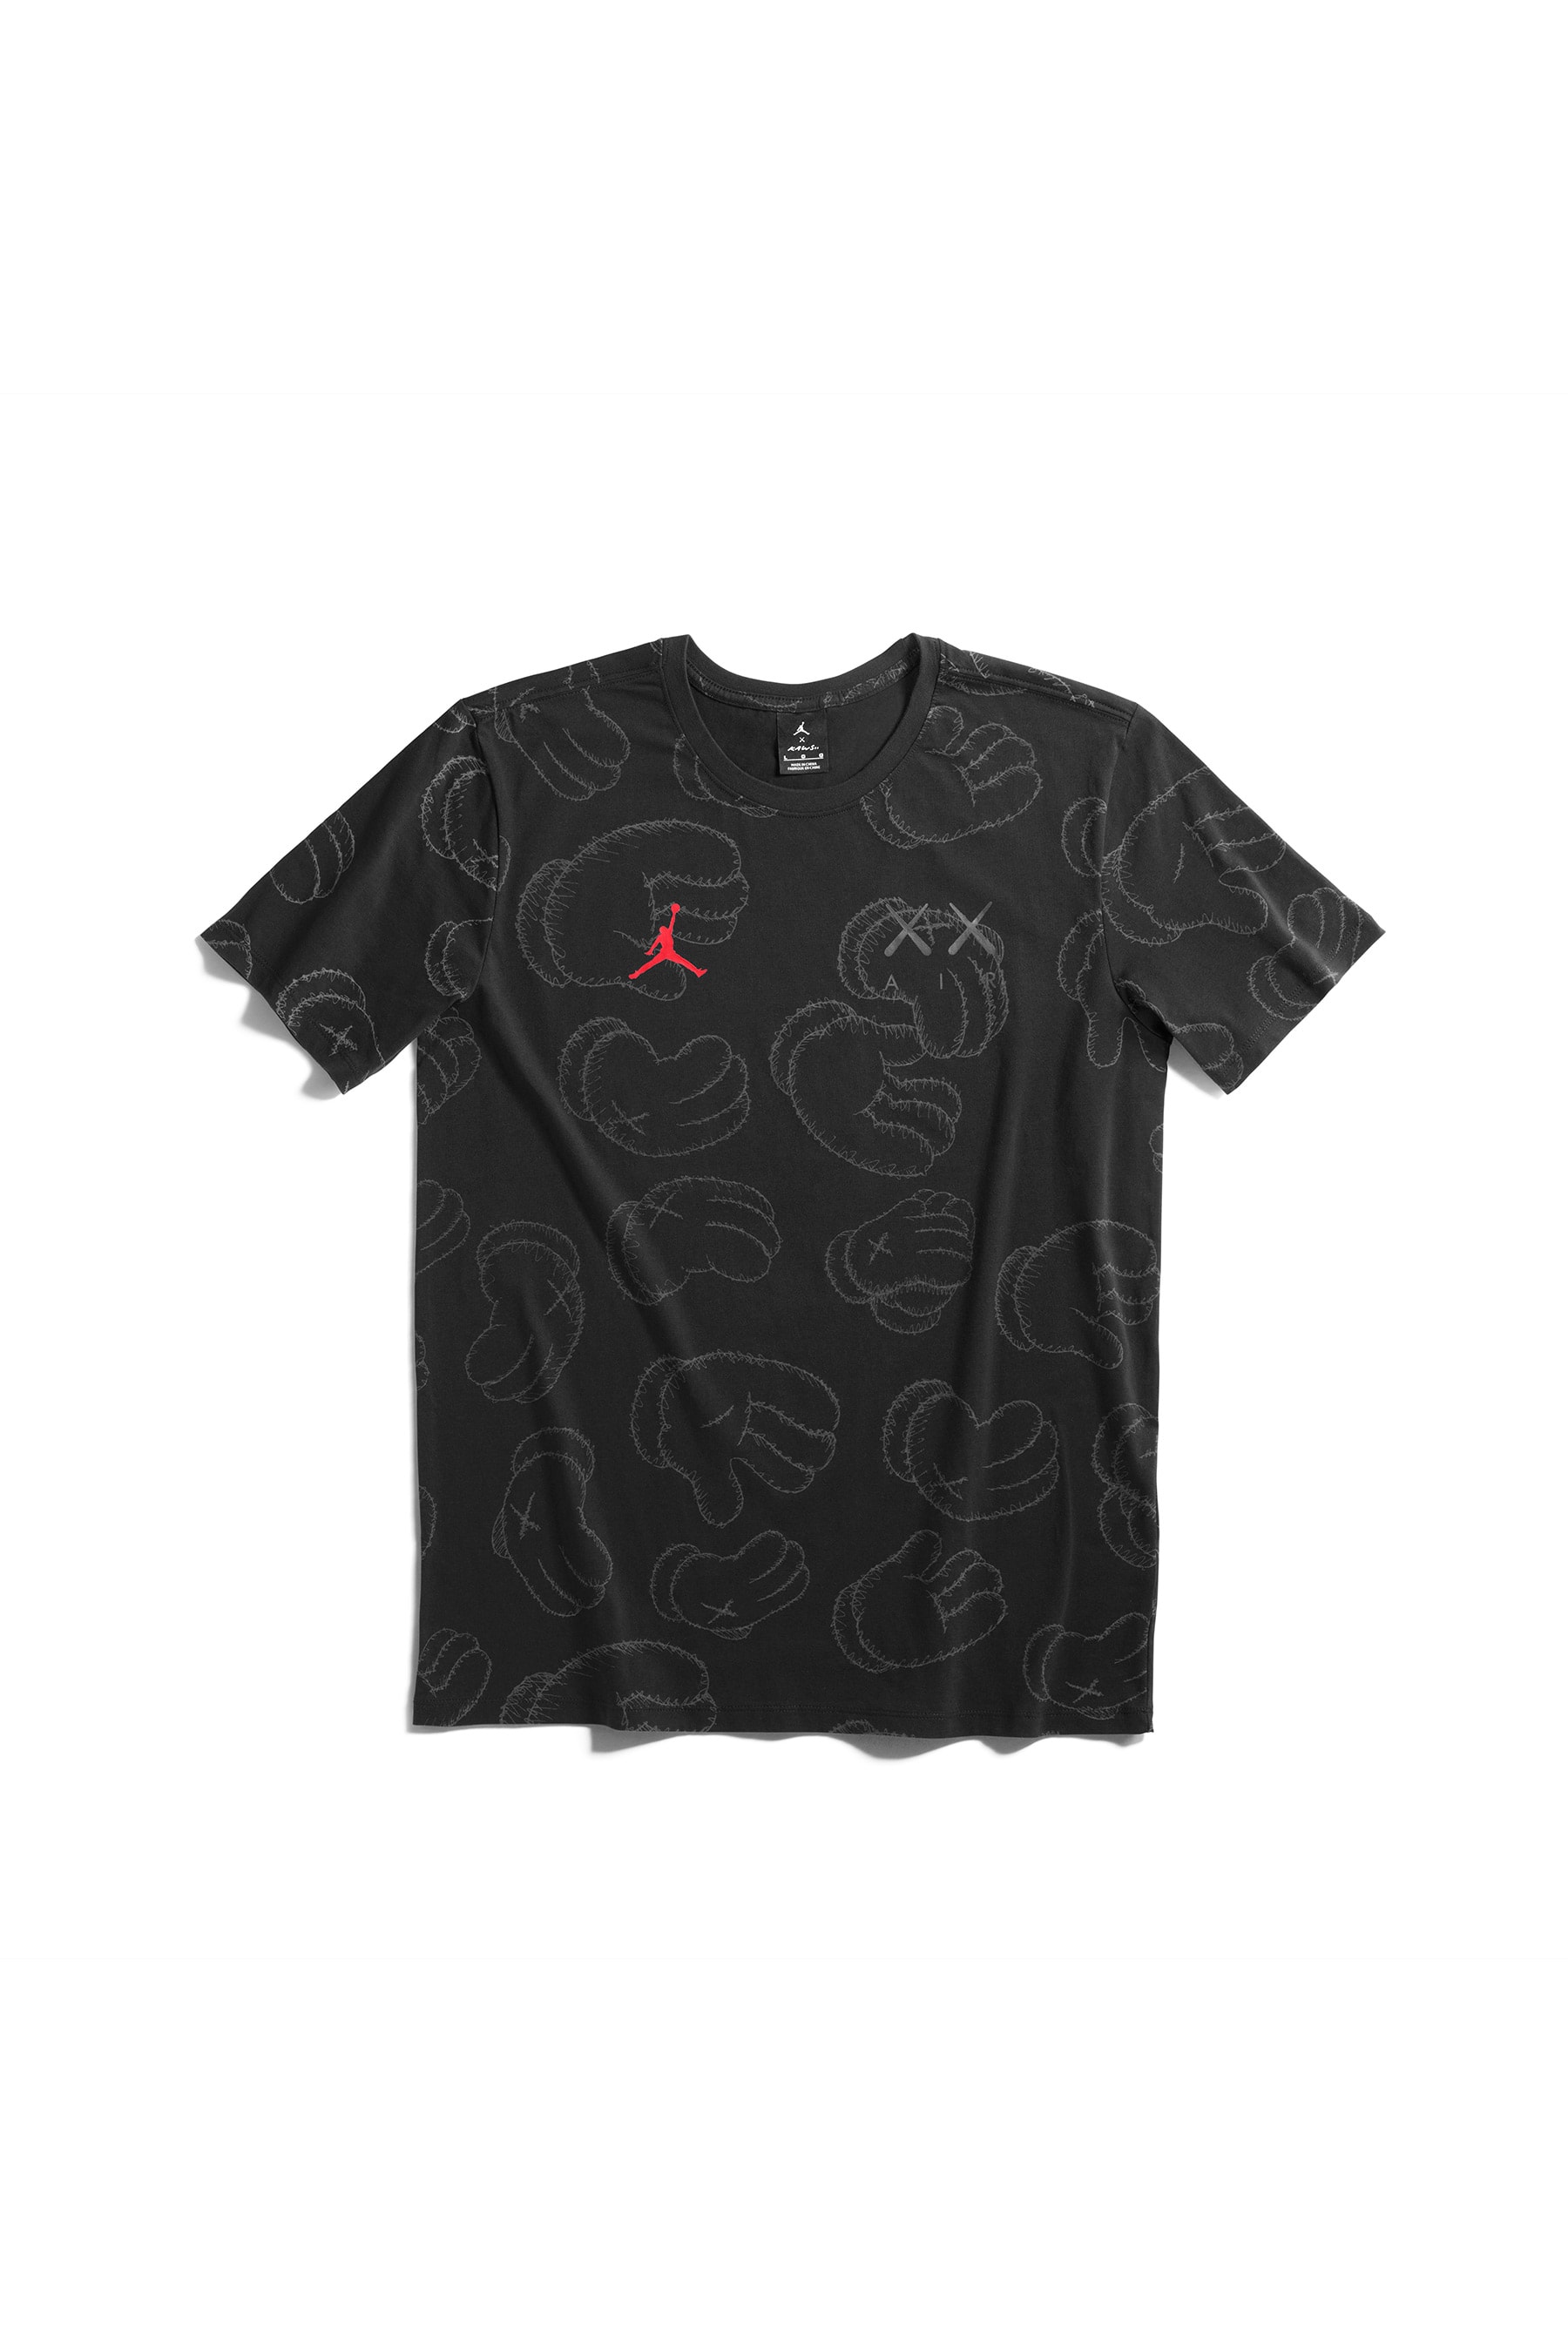 KAWS x Jordan Capsule T-Shirt